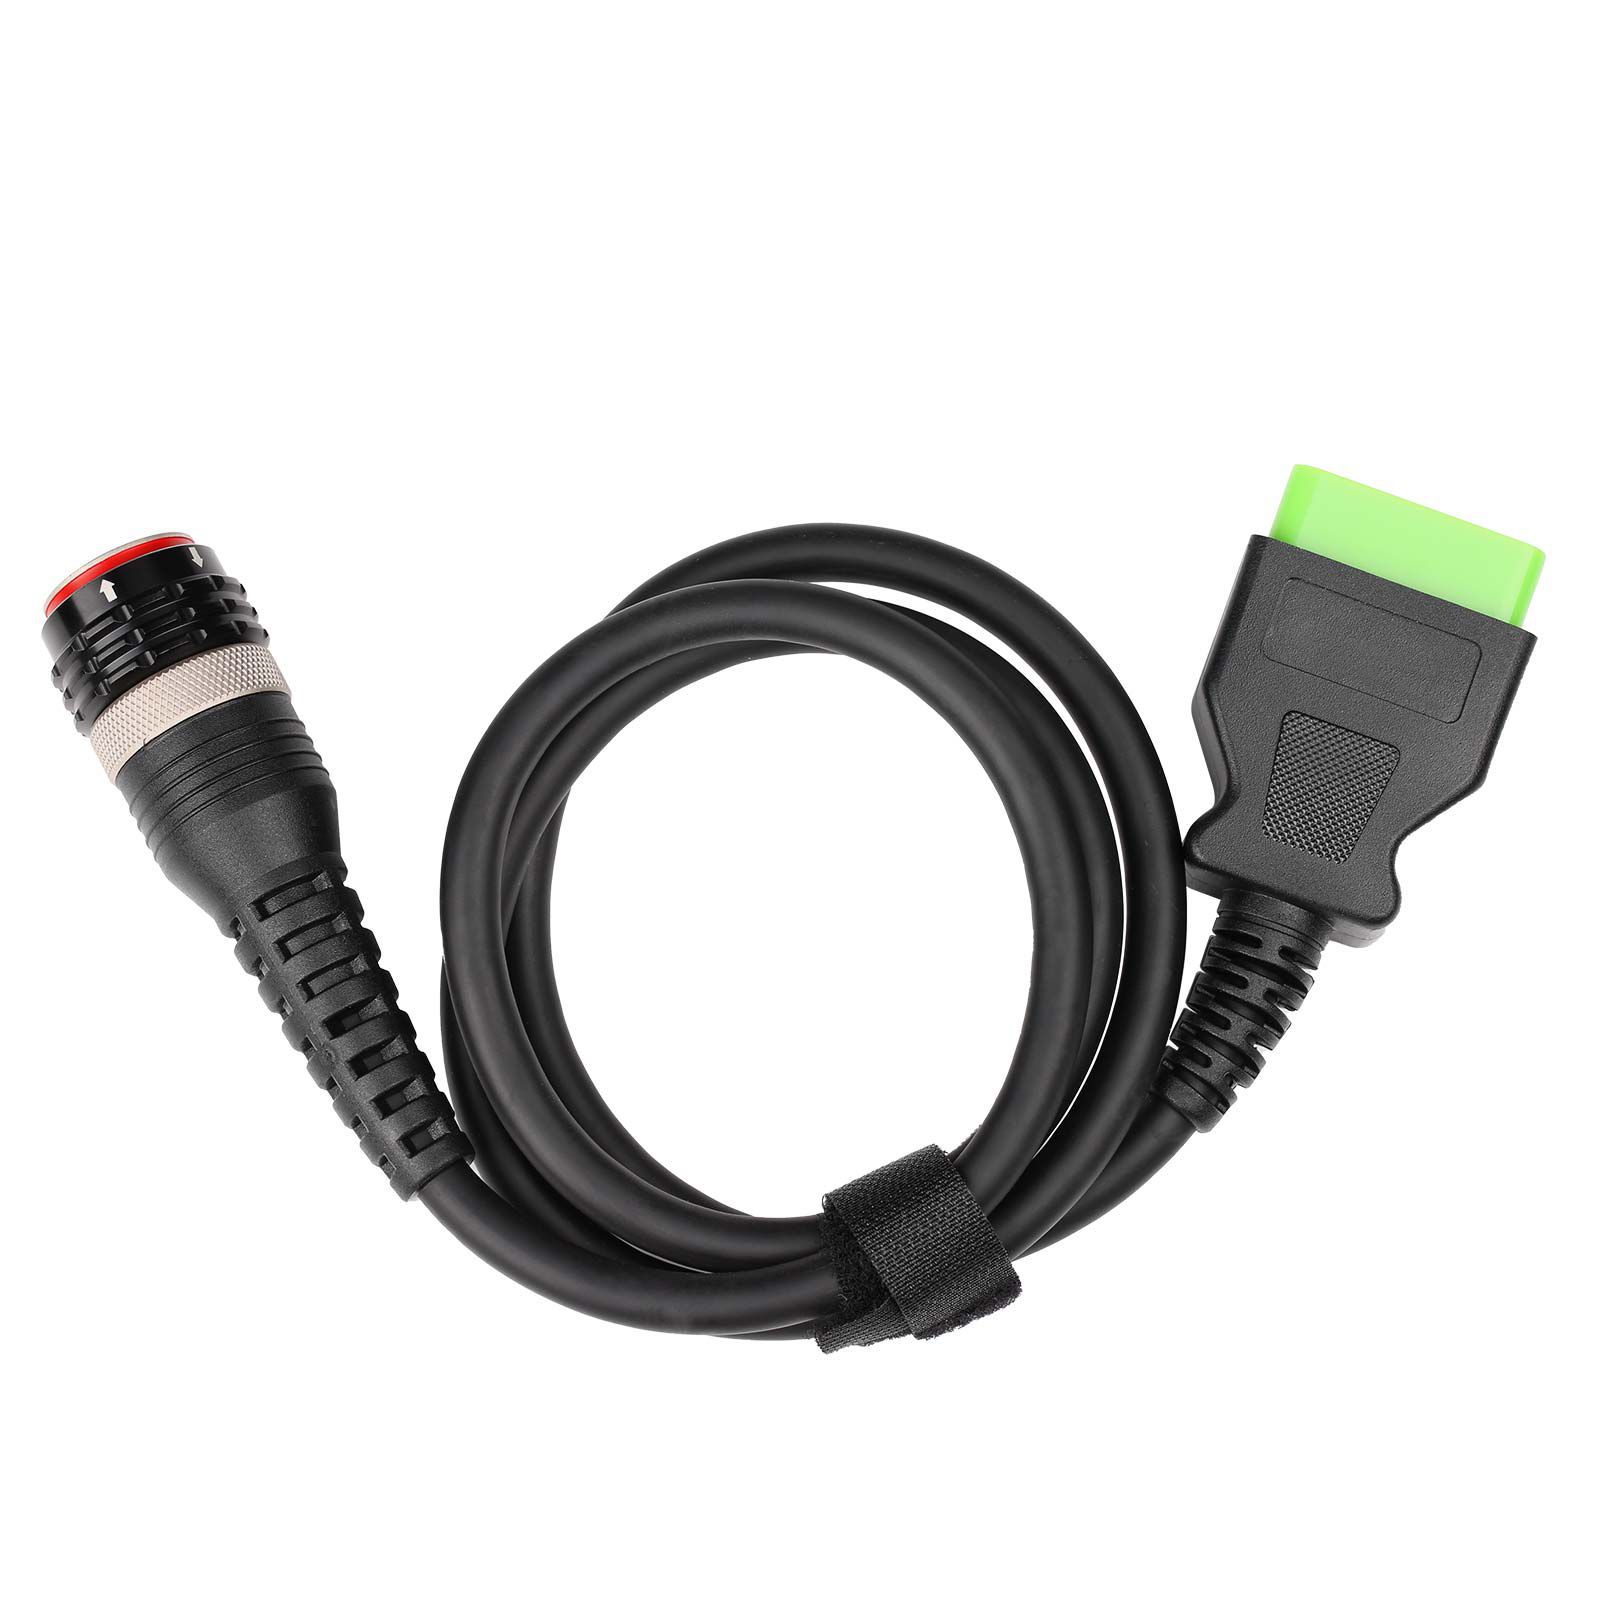  Câble OBD2 pour Volvo 88890304 vocom Green Edition